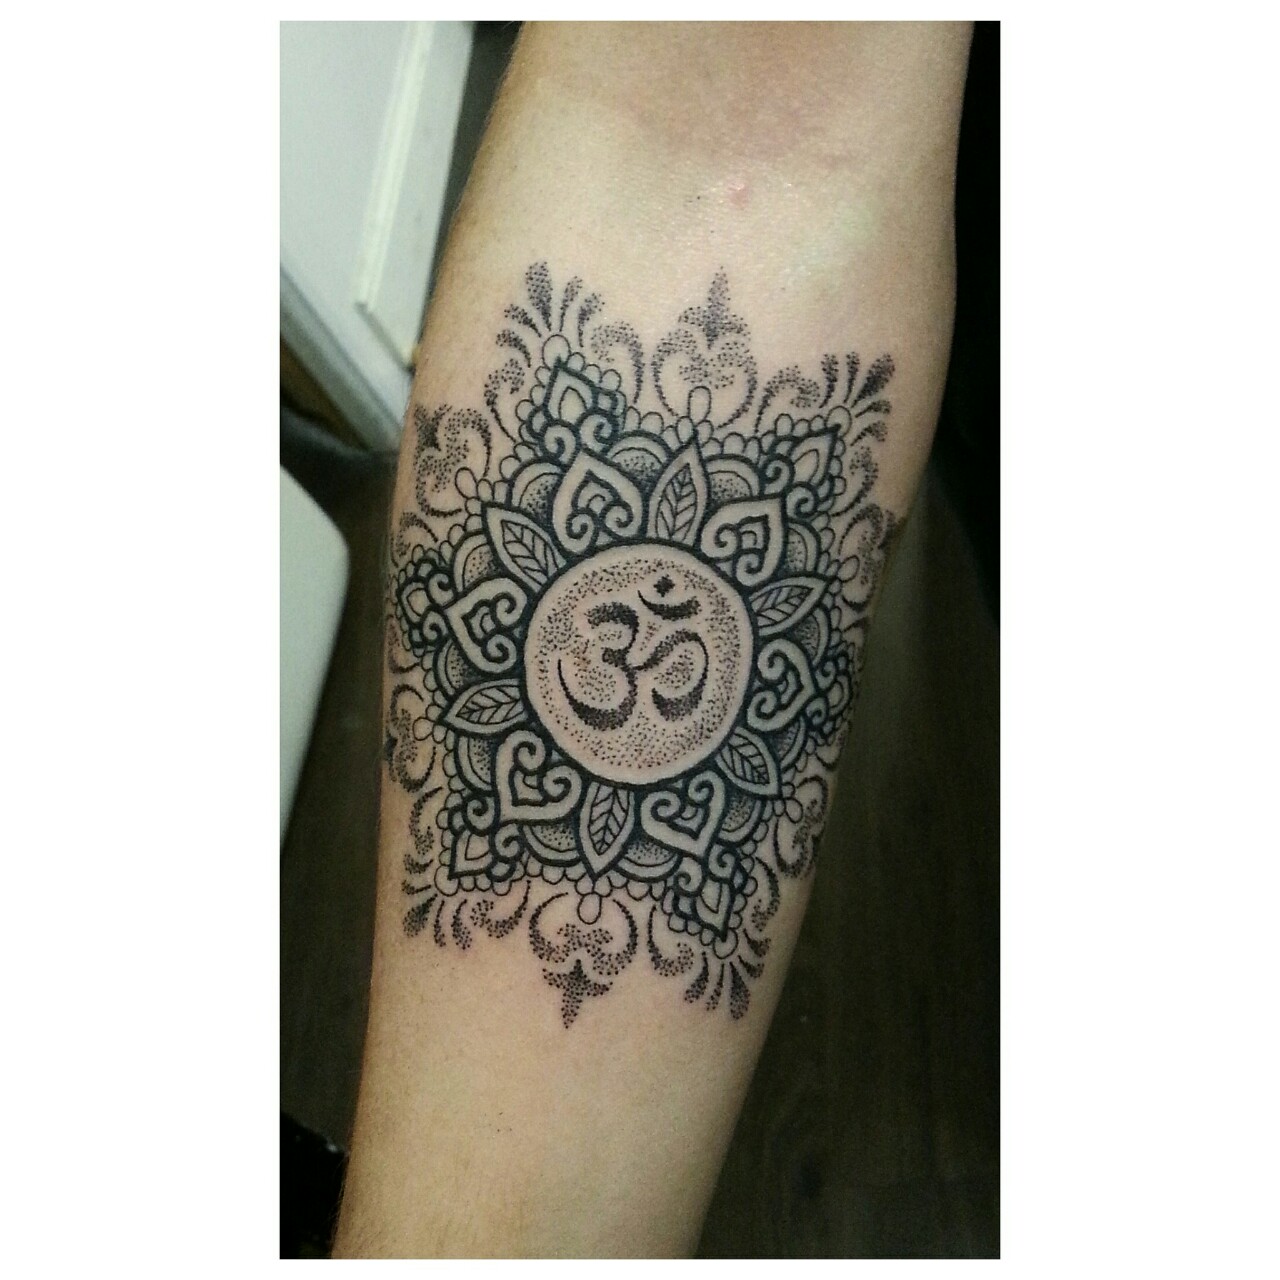 Is it disrespectful to get a mandala tattoo